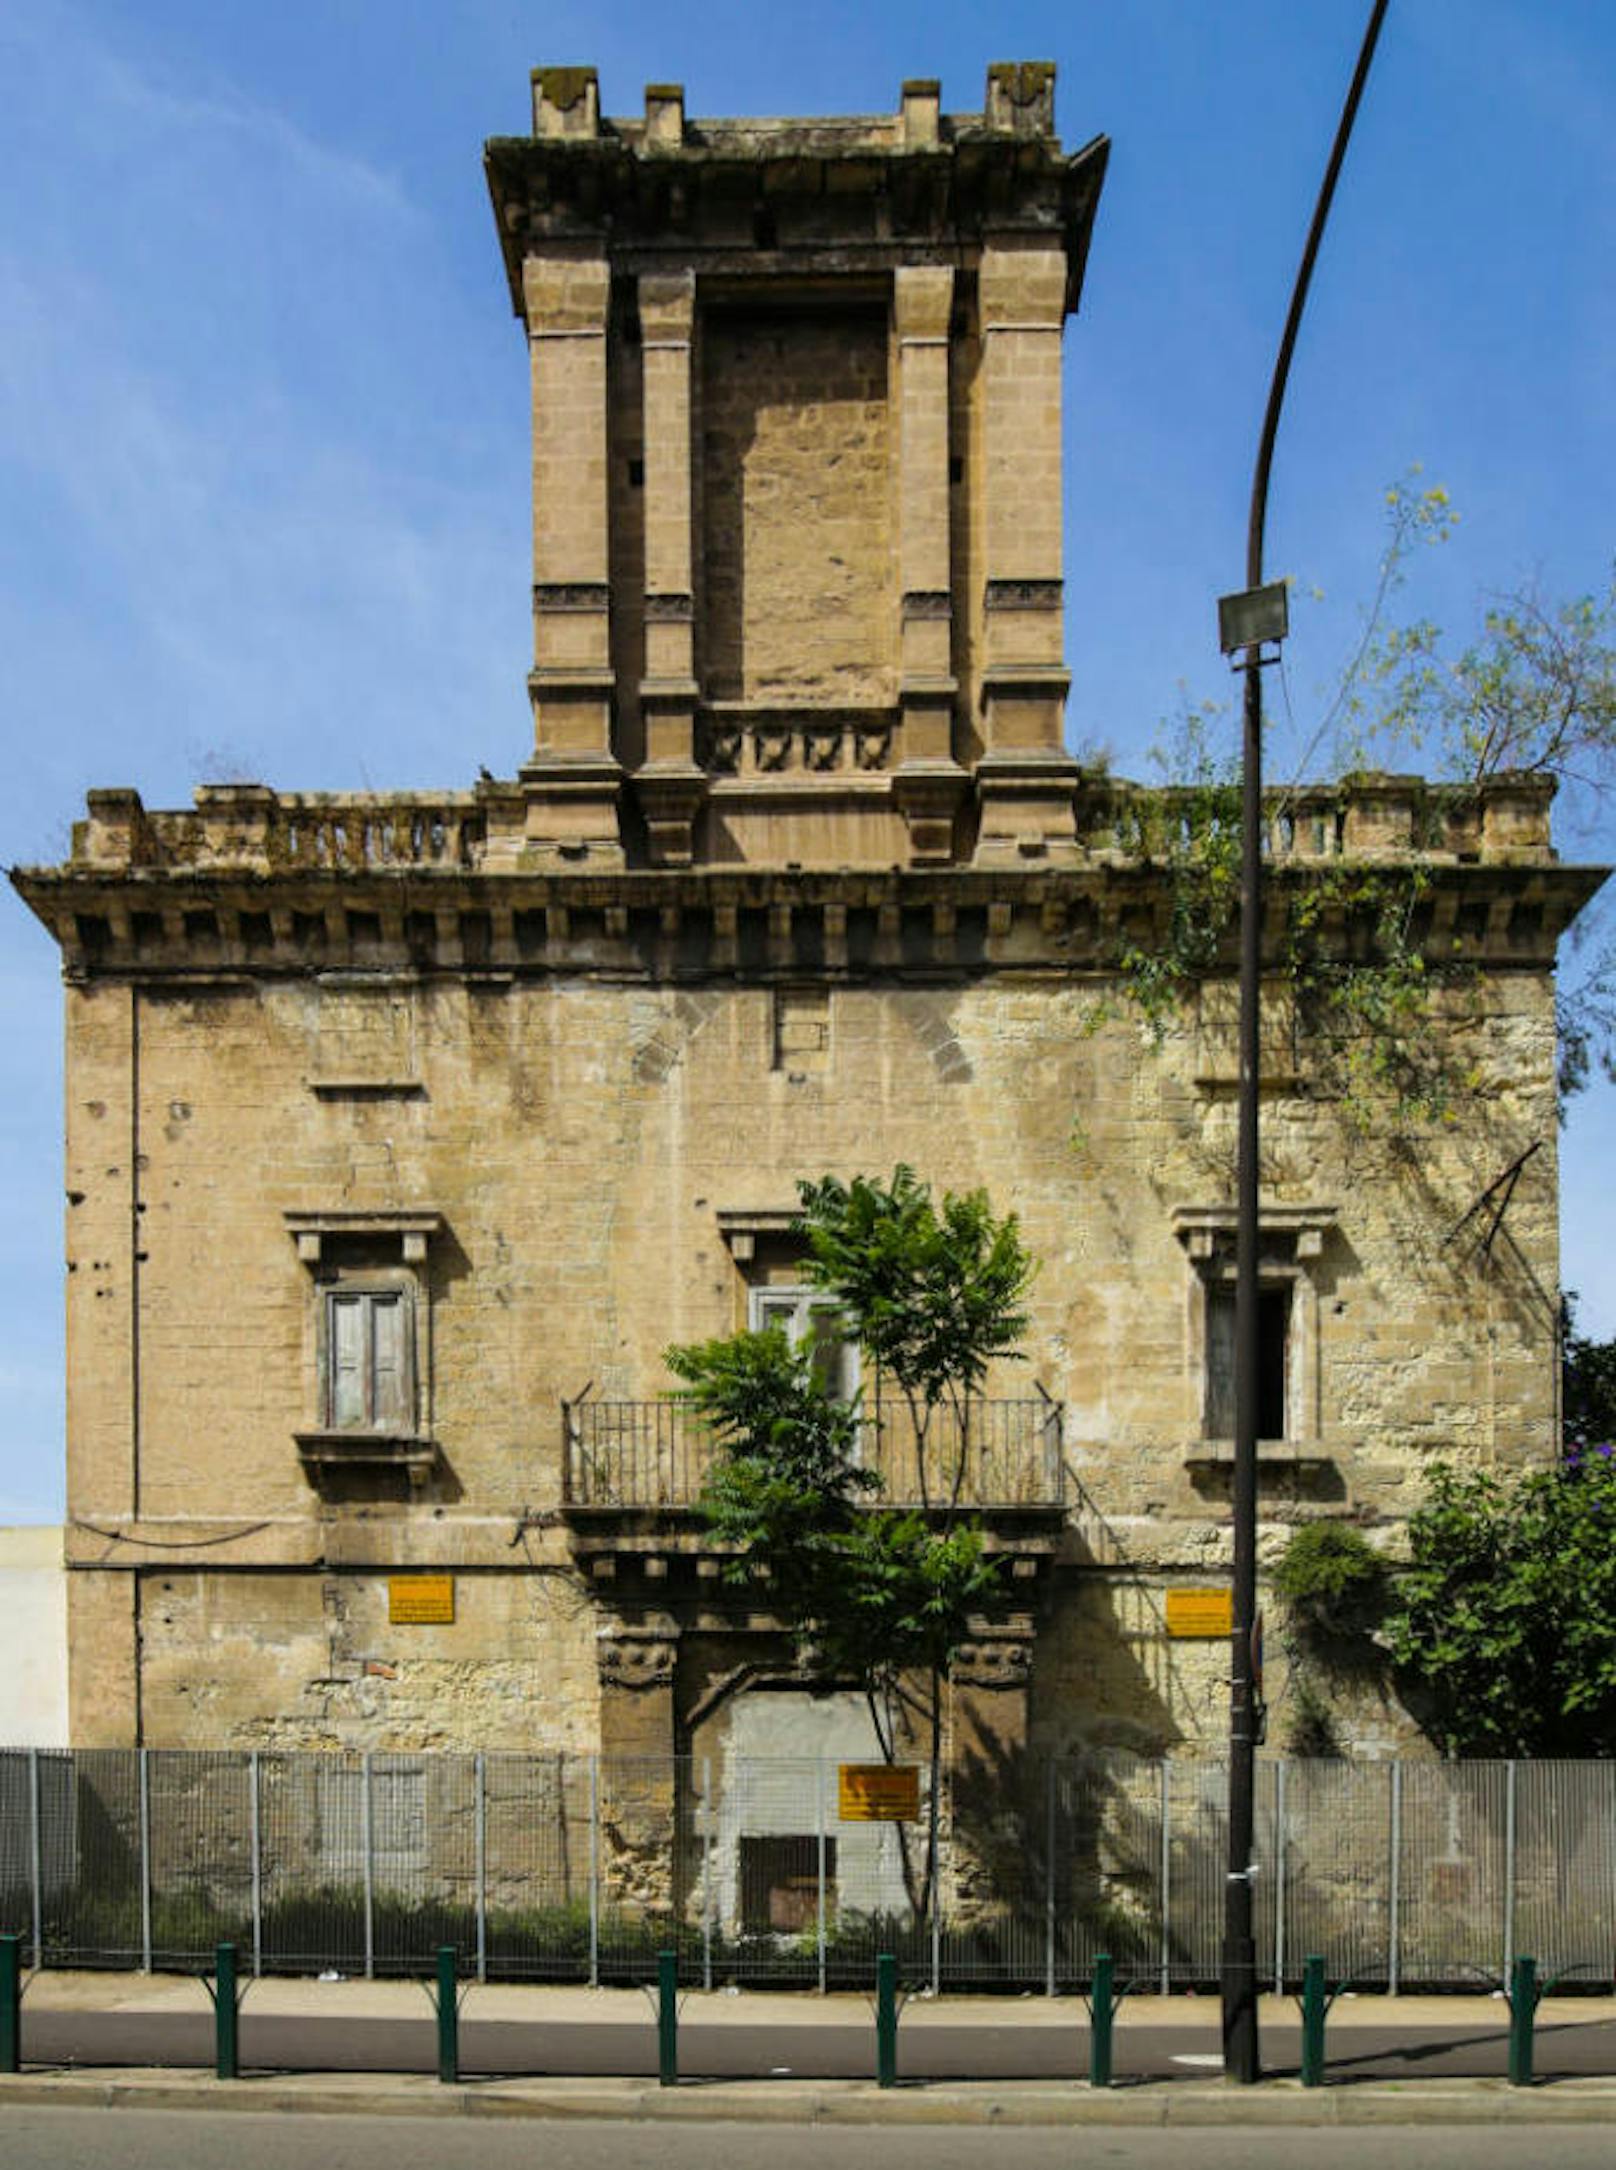 <b>La Torre d'Ayala</b>
In Taranto, in der Region Apulien, befindet sich dieser Turm. Er wurde als Sommerresidenz während der französischen Besatzung gebaut und gehört seit 1938 der italienischen Regierung. Er hat 4200 Quadratmeter.